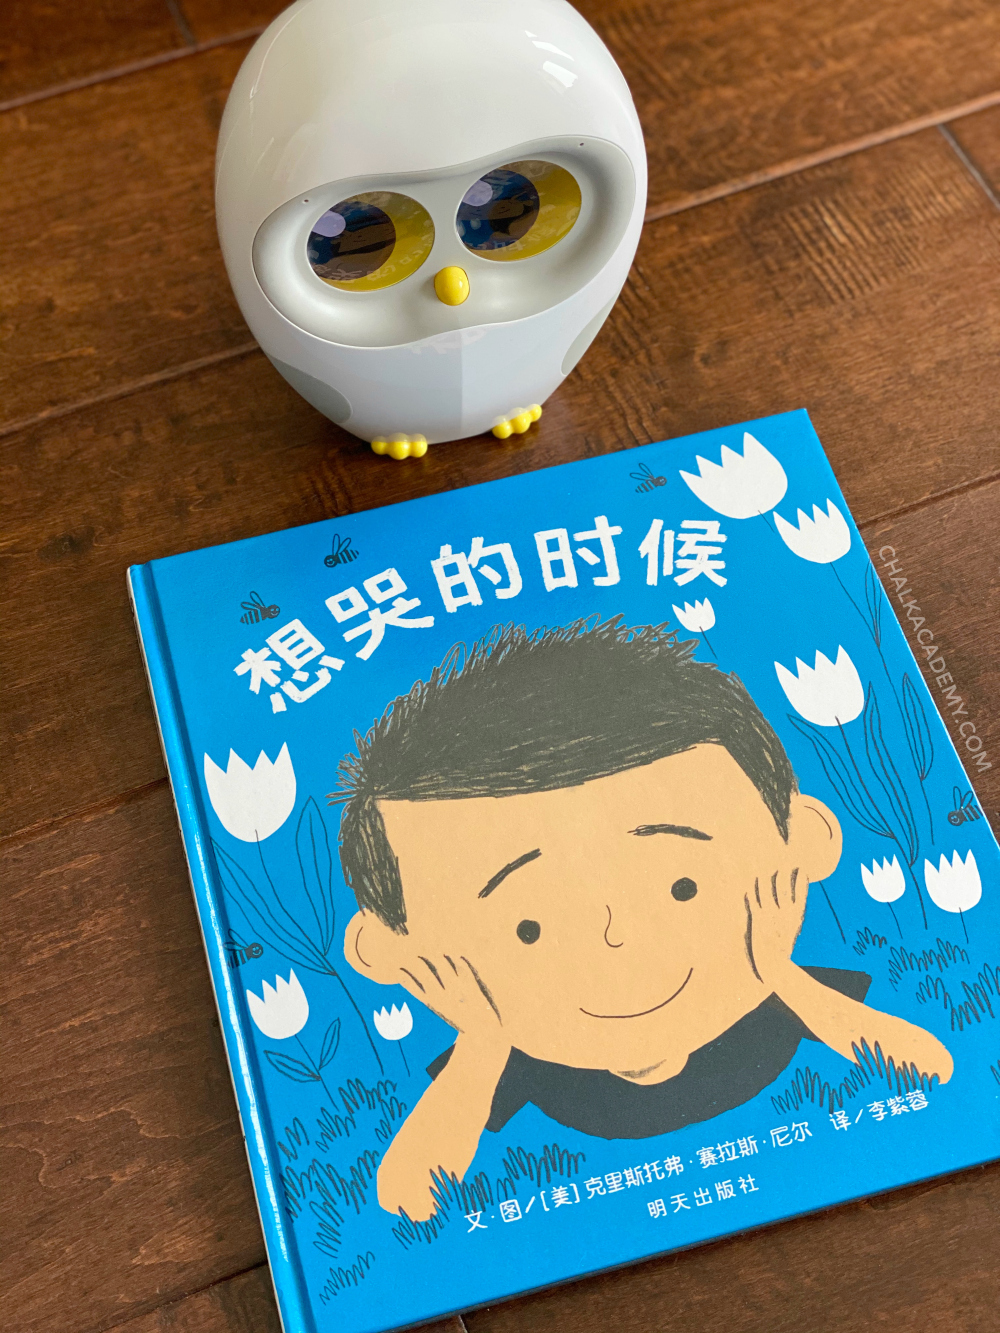 《想哭的时候》 Everyone – Chinese and English Book About Emotions